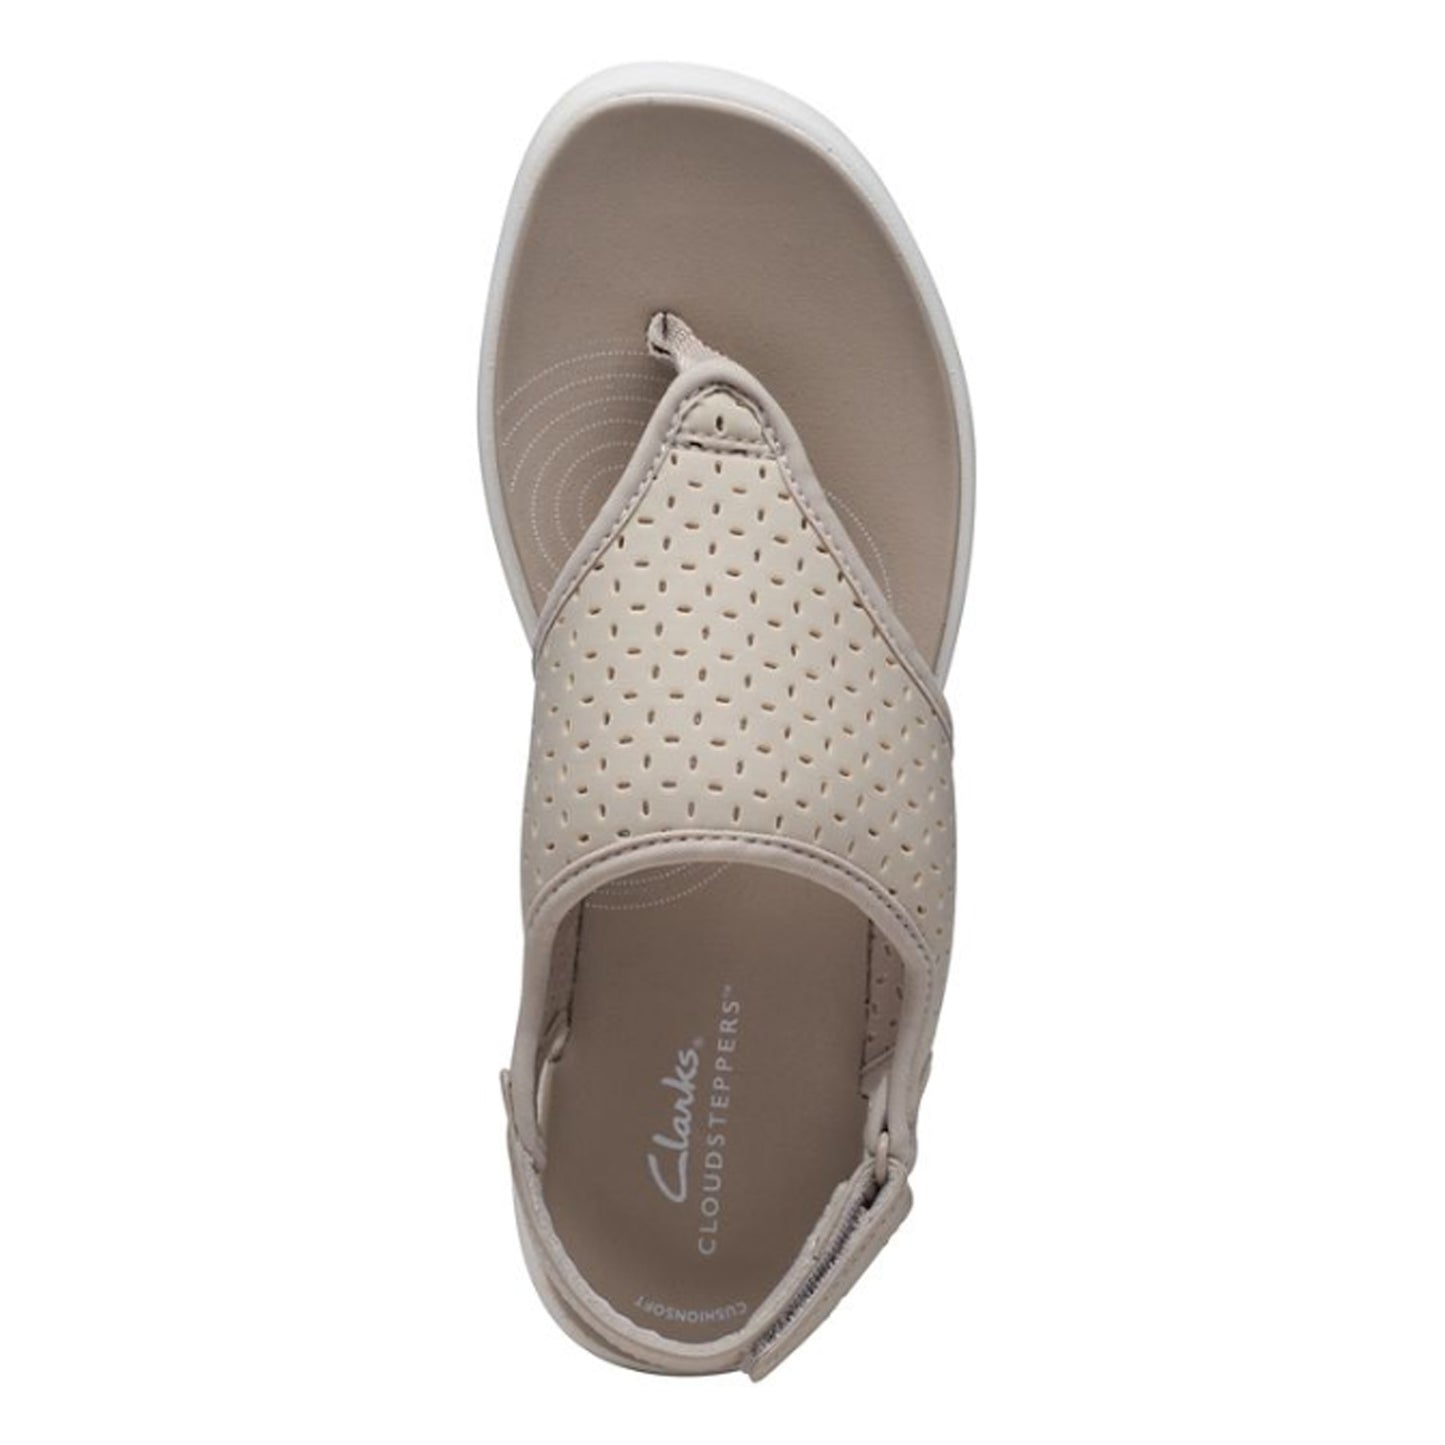 Peltz Shoes  Women's Clarks Drift Blossom Sandal TAUPE 26171819